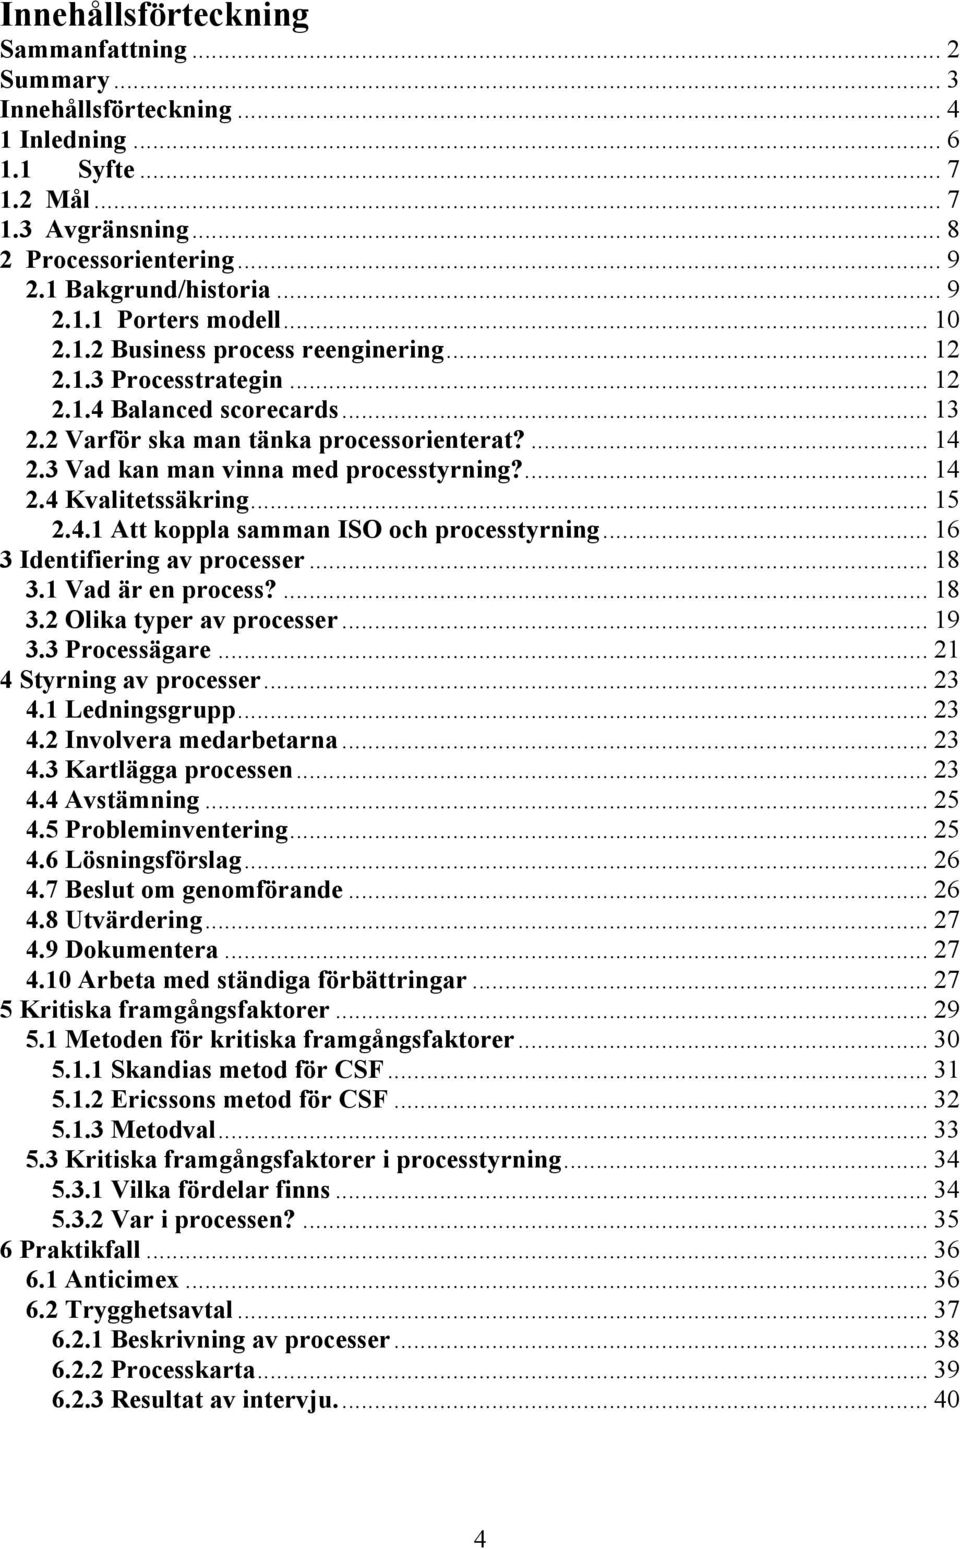 ... 14 2.4 Kvalitetssäkring... 15 2.4.1 Att koppla samman ISO och processtyrning... 16 3 Identifiering av processer... 18 3.1 Vad är en process?... 18 3.2 Olika typer av processer... 19 3.